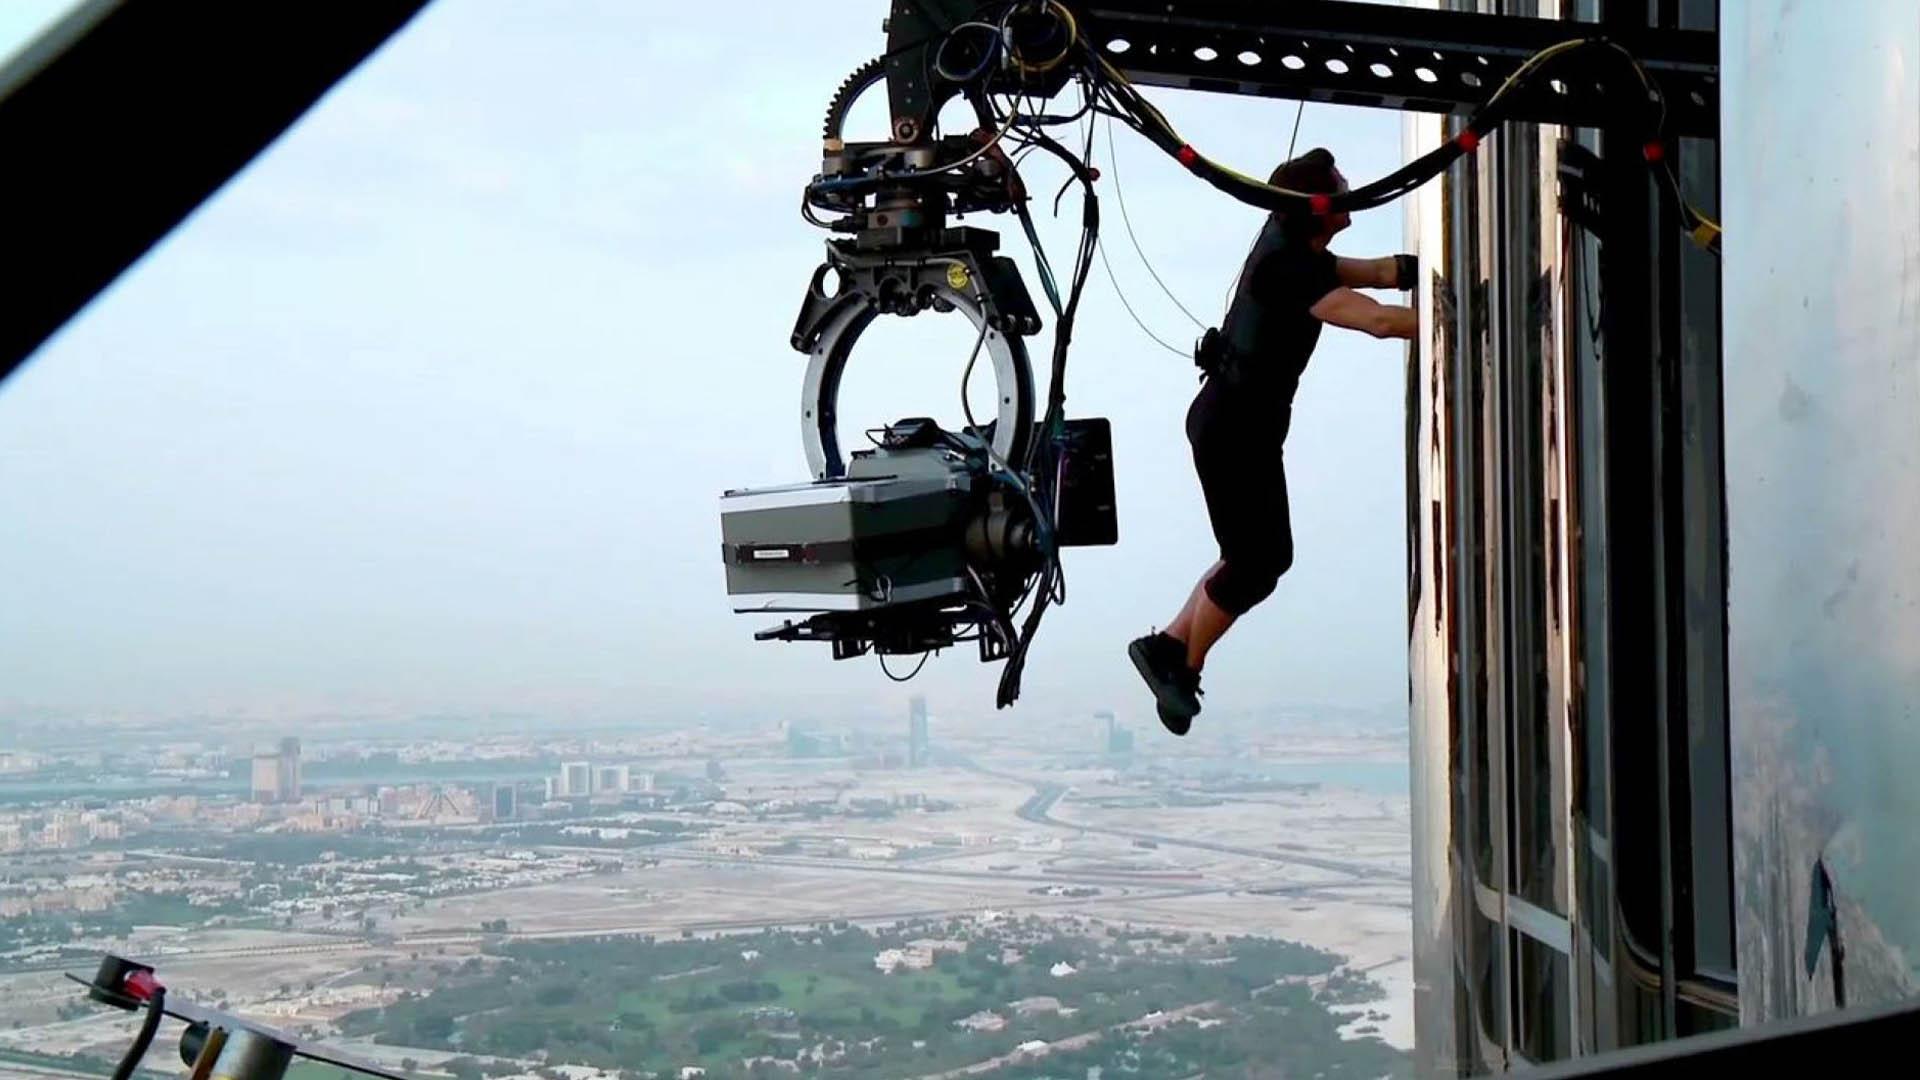 تام کروز درحال ایفای نقش روی برج خلیفه در دوبی در مجموعه Mission impossible